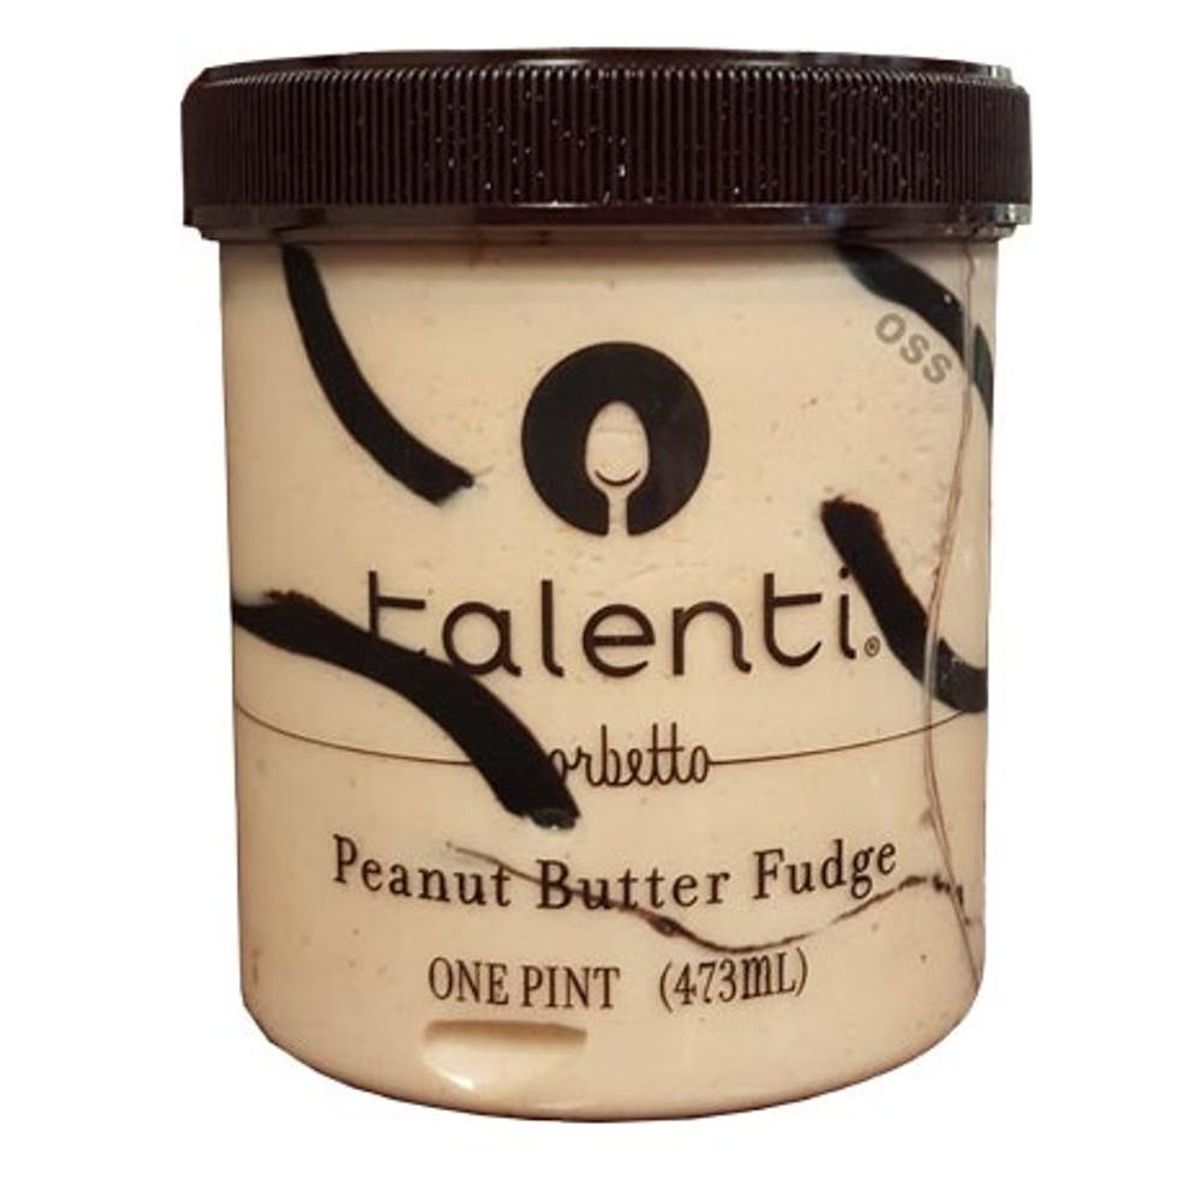 This Non-Dairy Talenti Sorbetto Flavor Is a Peanut Butter Junkie’s Dream Come True